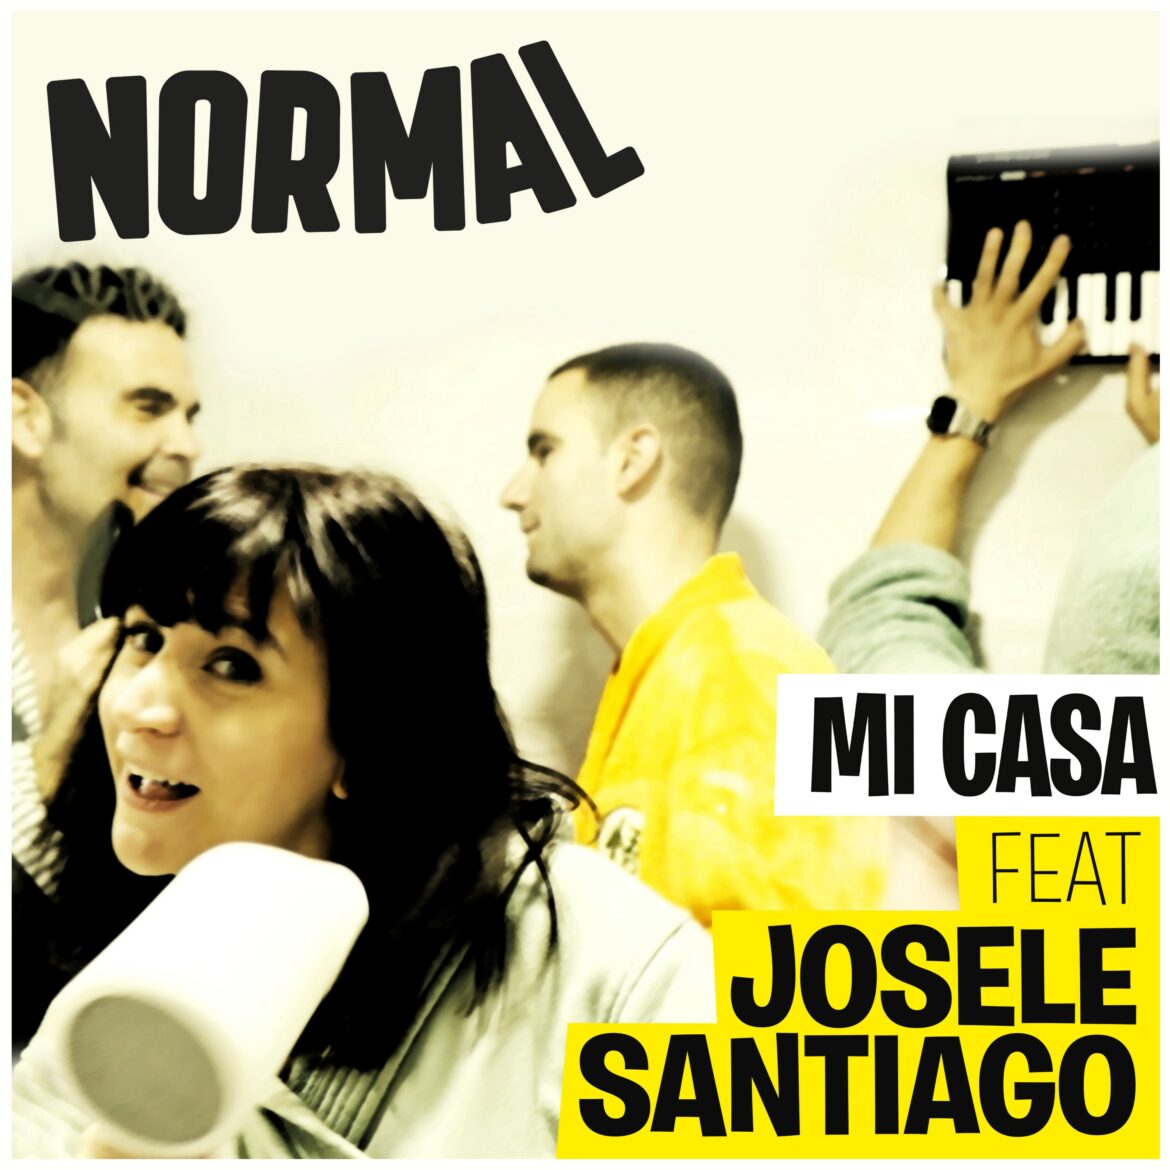 NORMAL presenta "Mi casa" con la colaboración de Josele Santiago